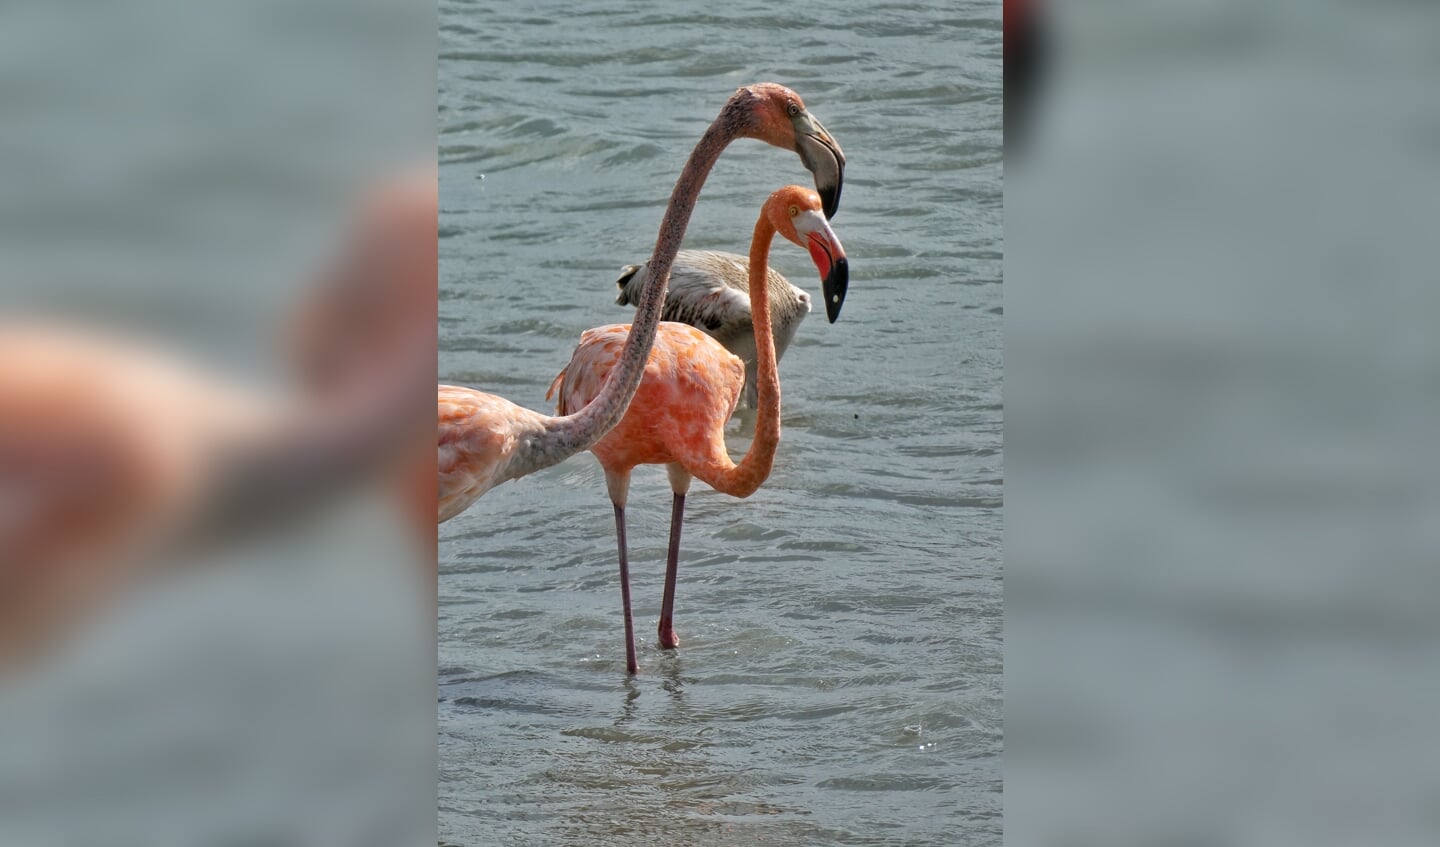 De foto is deze zomer gemaakt op Curaçao. Mijn allereerste verre vakantie. Vliegen is niet mijn grootste hobby dus het was voor mij een hele overwinning Voor mijn vakantie had ik een nieuwe camera gekocht, met zoomlens. Ik moest en zou een mooie maar zeker ook scherpe foto maken van een flamingo. Mijn nieuwe camera heeft me daar zeker niet teleurgesteld. Ik heb prachtige foto's kunnen schieten van de flamingo's die toch nog wel op aardig afstandje van ons stonden.